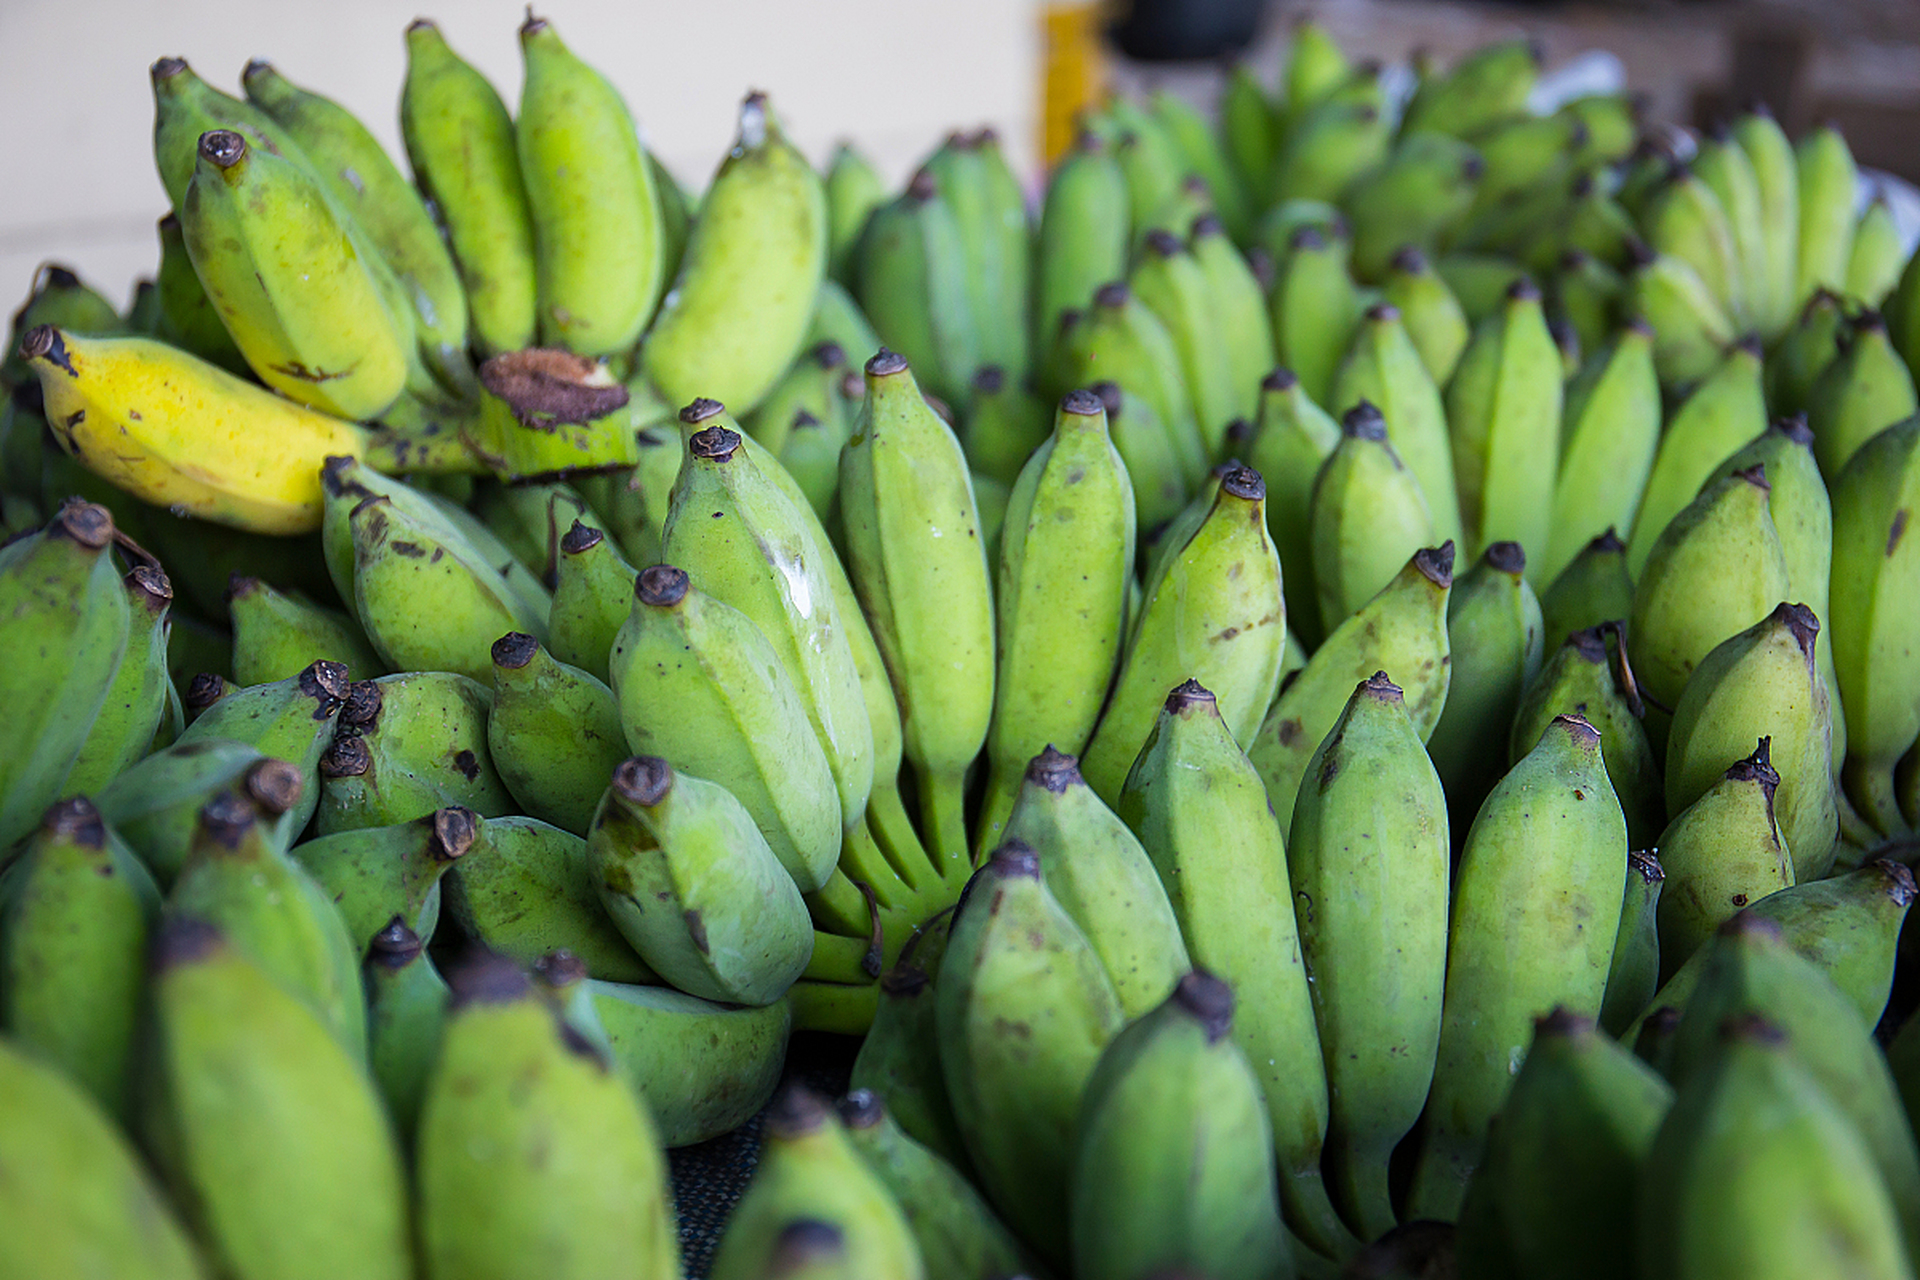 香蕉催熟有三种简单方法:苹果催熟法利用苹果释放的乙烯气体促进成熟